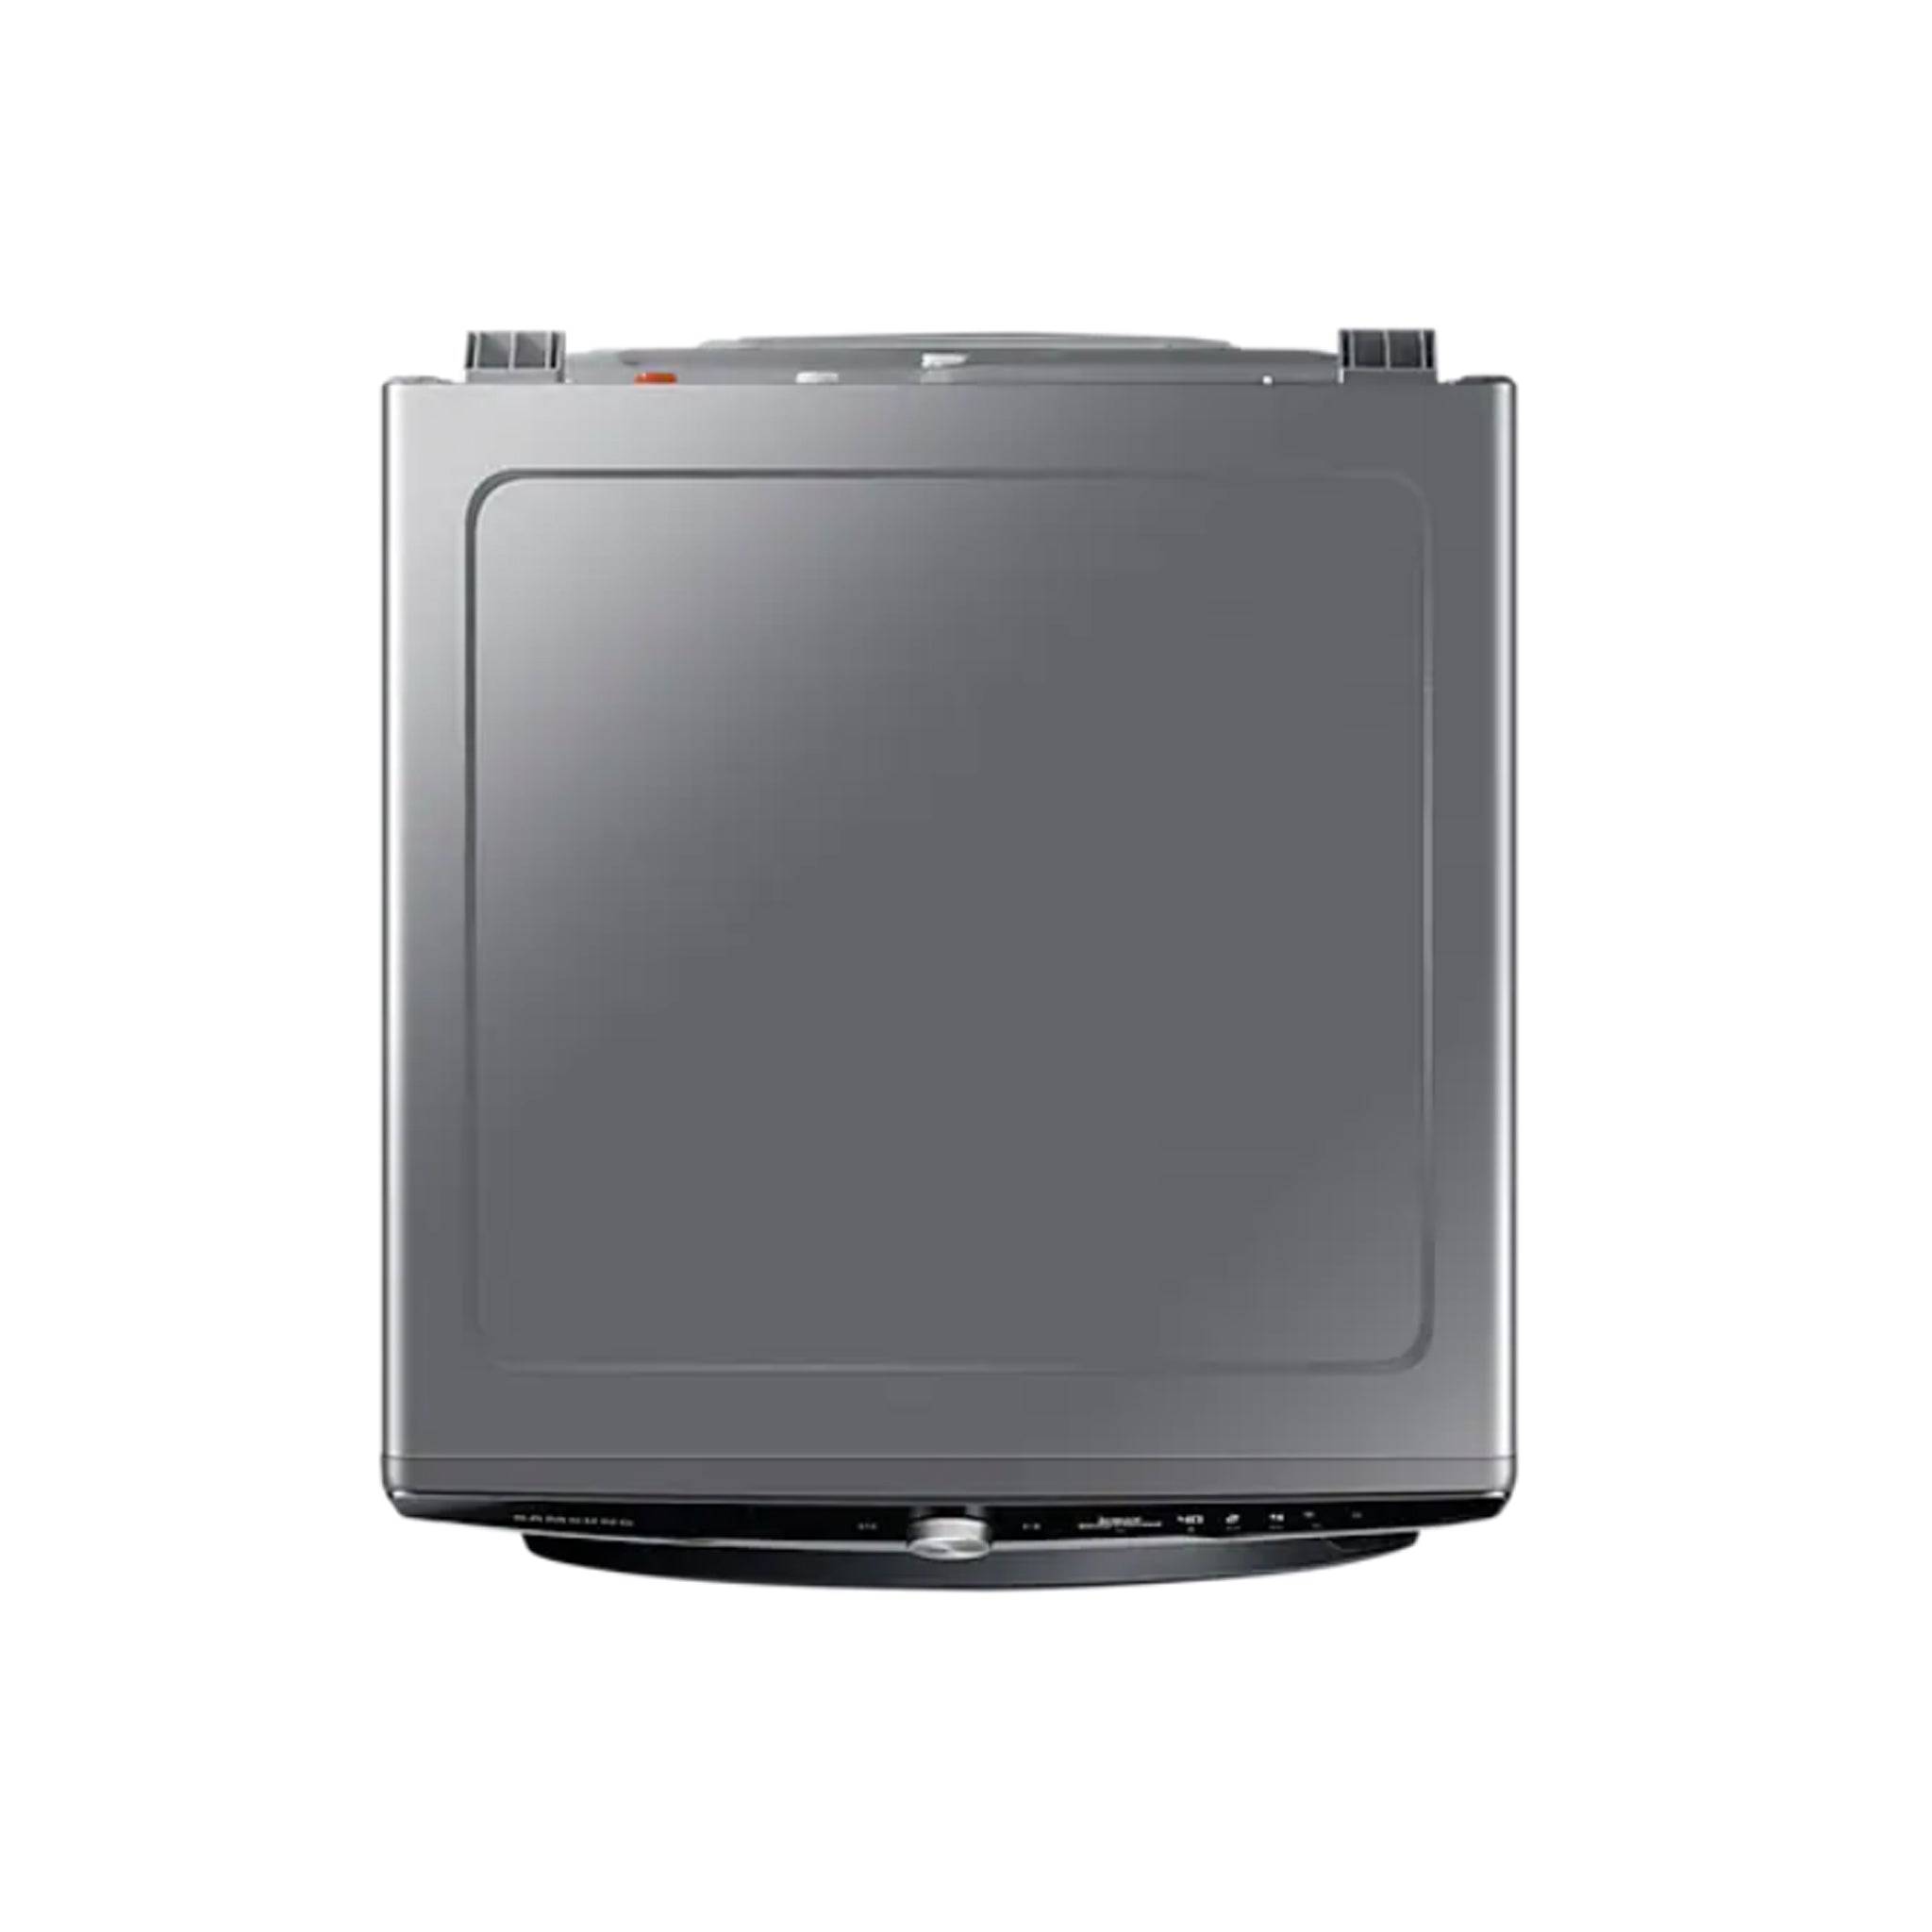 SAMSUNG 16KG WD16T6300GP/TC Front Load Washer & 10KG Dryer Washing Machine Samsung